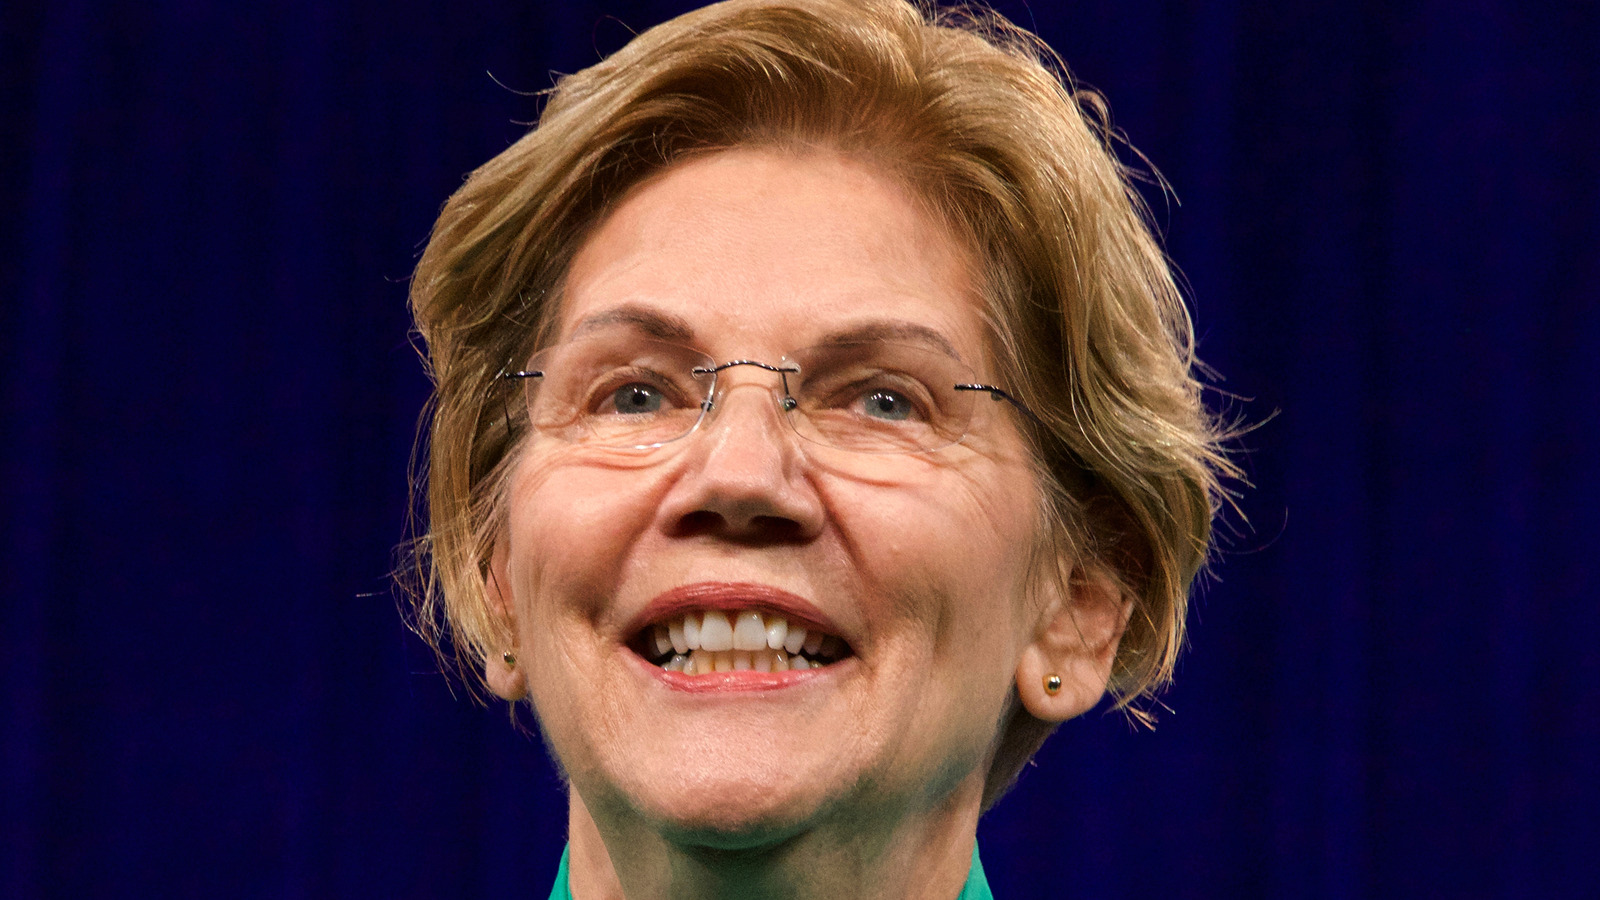 What Is Elizabeth Warren's Net Worth?